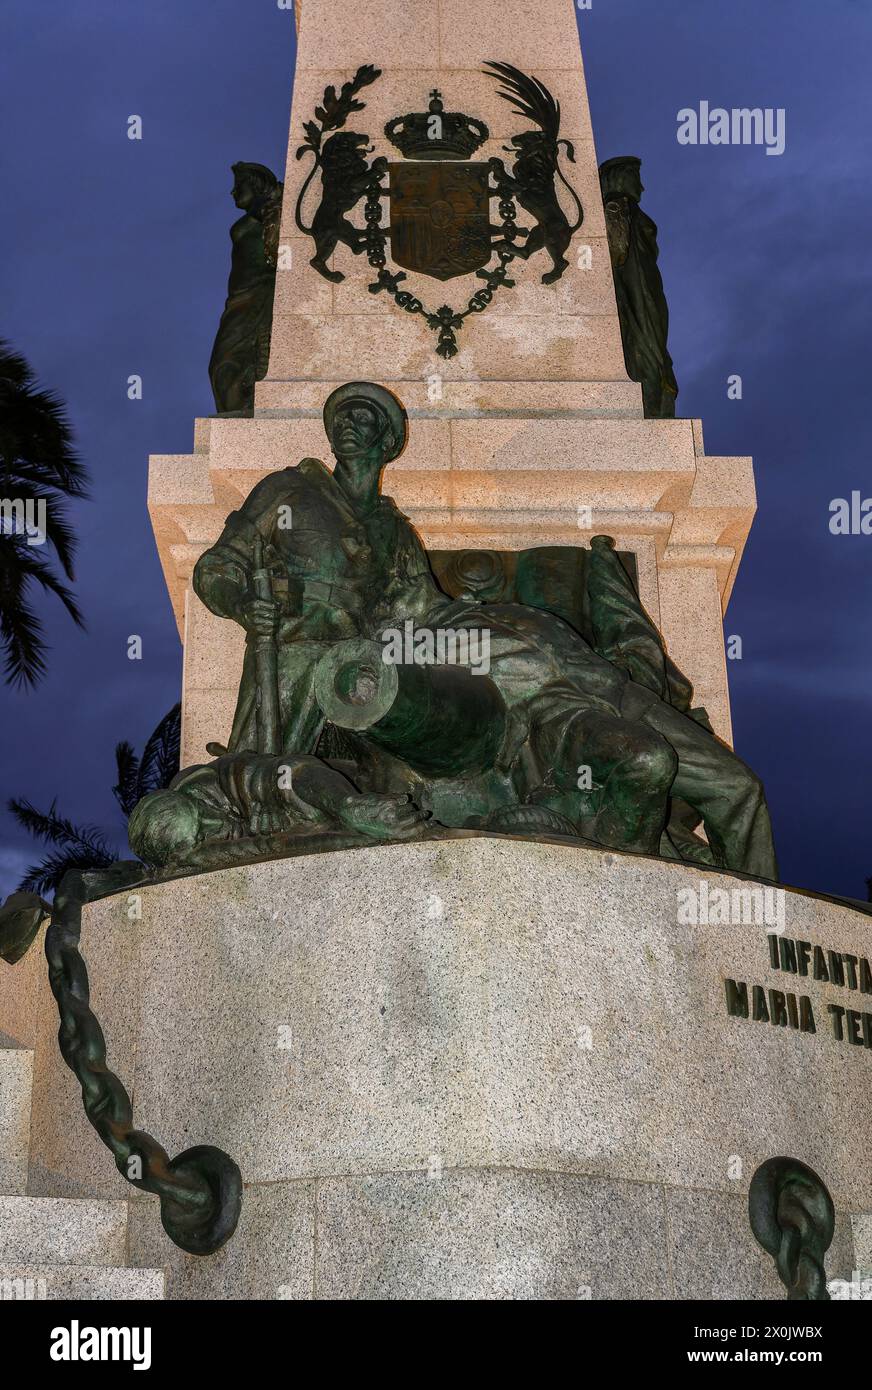 Monument aux héros de Cavite et Santiago de Cuba, 20ème siècle, groupe sculptural dans le port de la ville espagnole de Carthagène, Murcie, Espagne. Banque D'Images